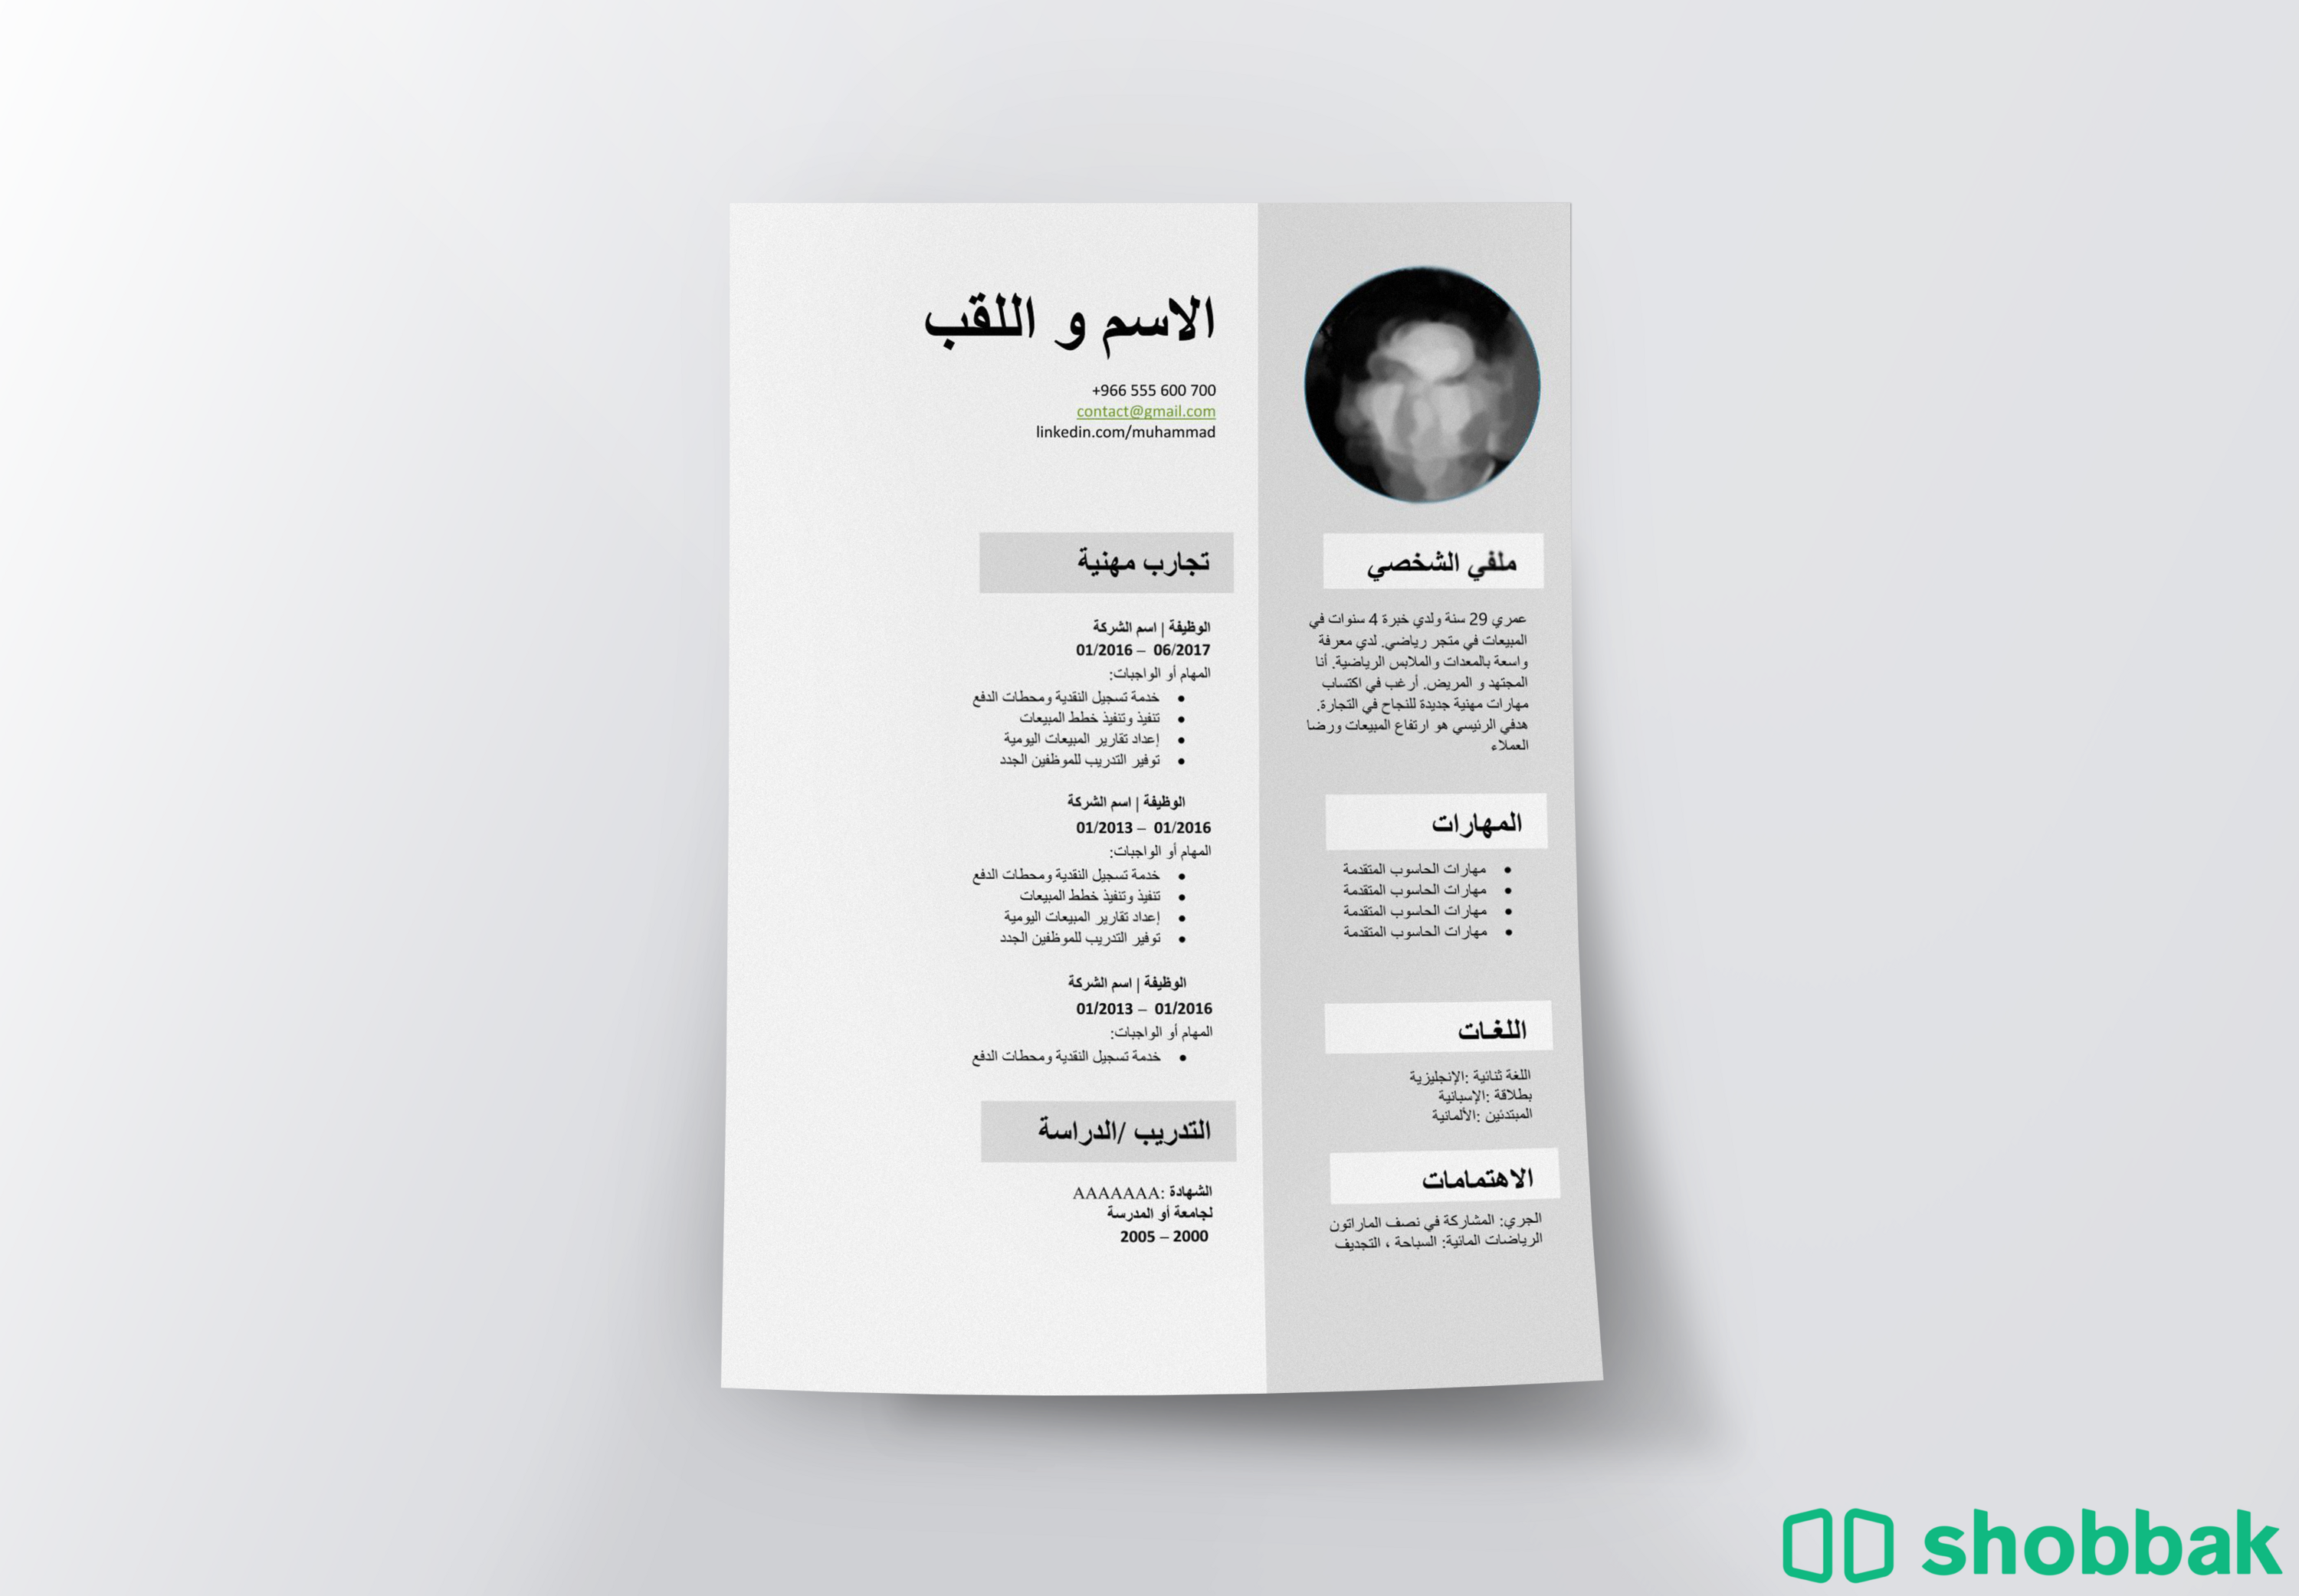    تصميم السيرة ذاتية CV باللغتين العربية والانجليزية Shobbak Saudi Arabia